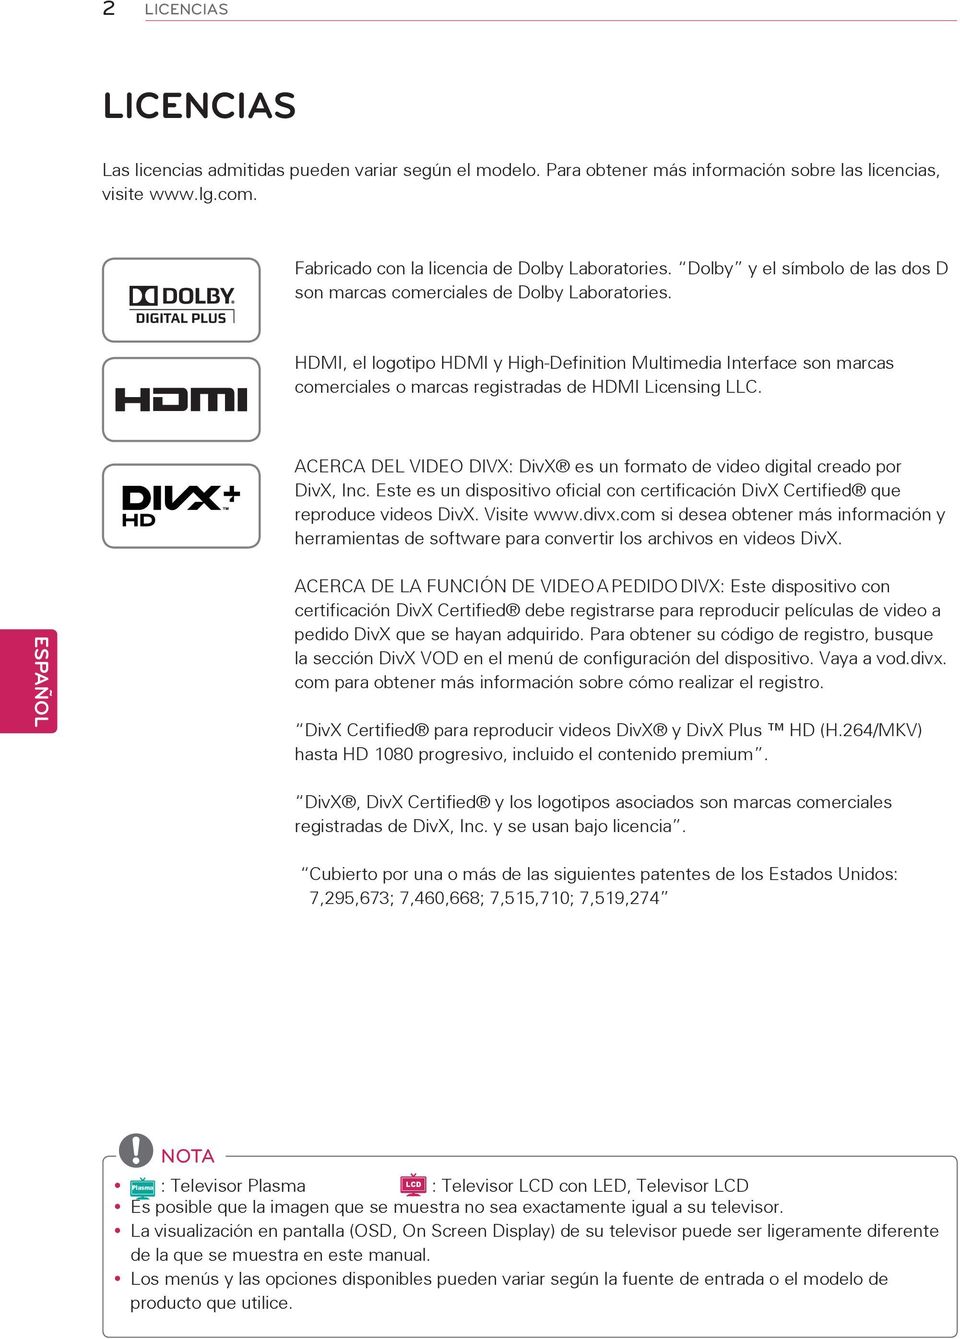 HDMI, el logotipo HDMI y High-Definition Multimedia Interface son marcas comerciales o marcas registradas de HDMI Licensing LLC.